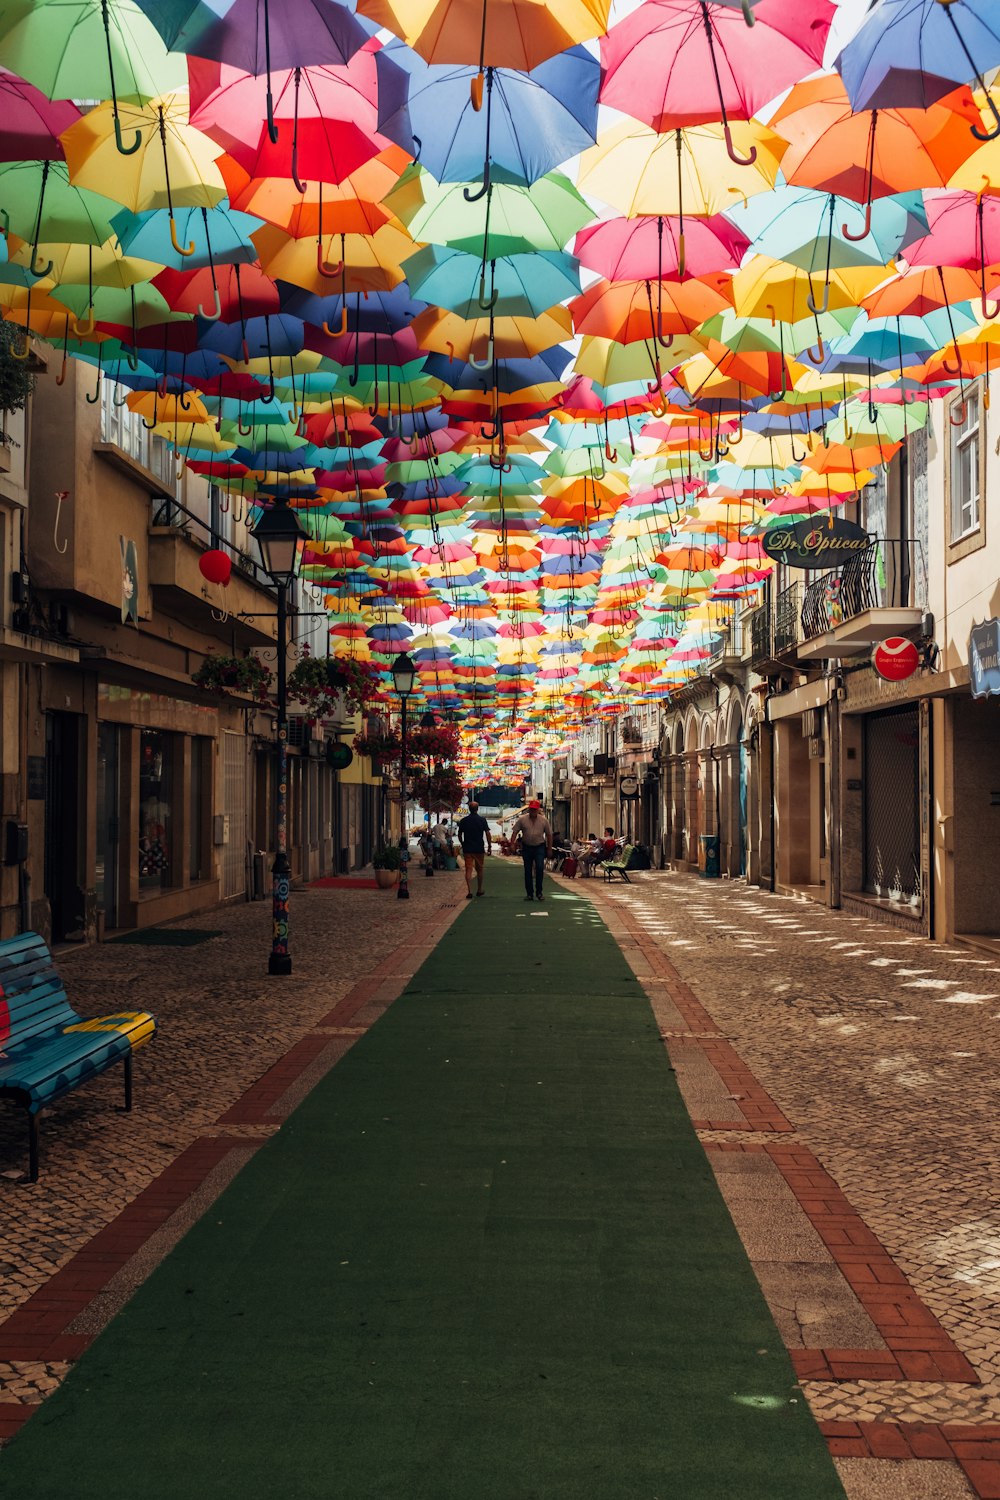 paraguas de colores variados que cubren el callejón durante el día